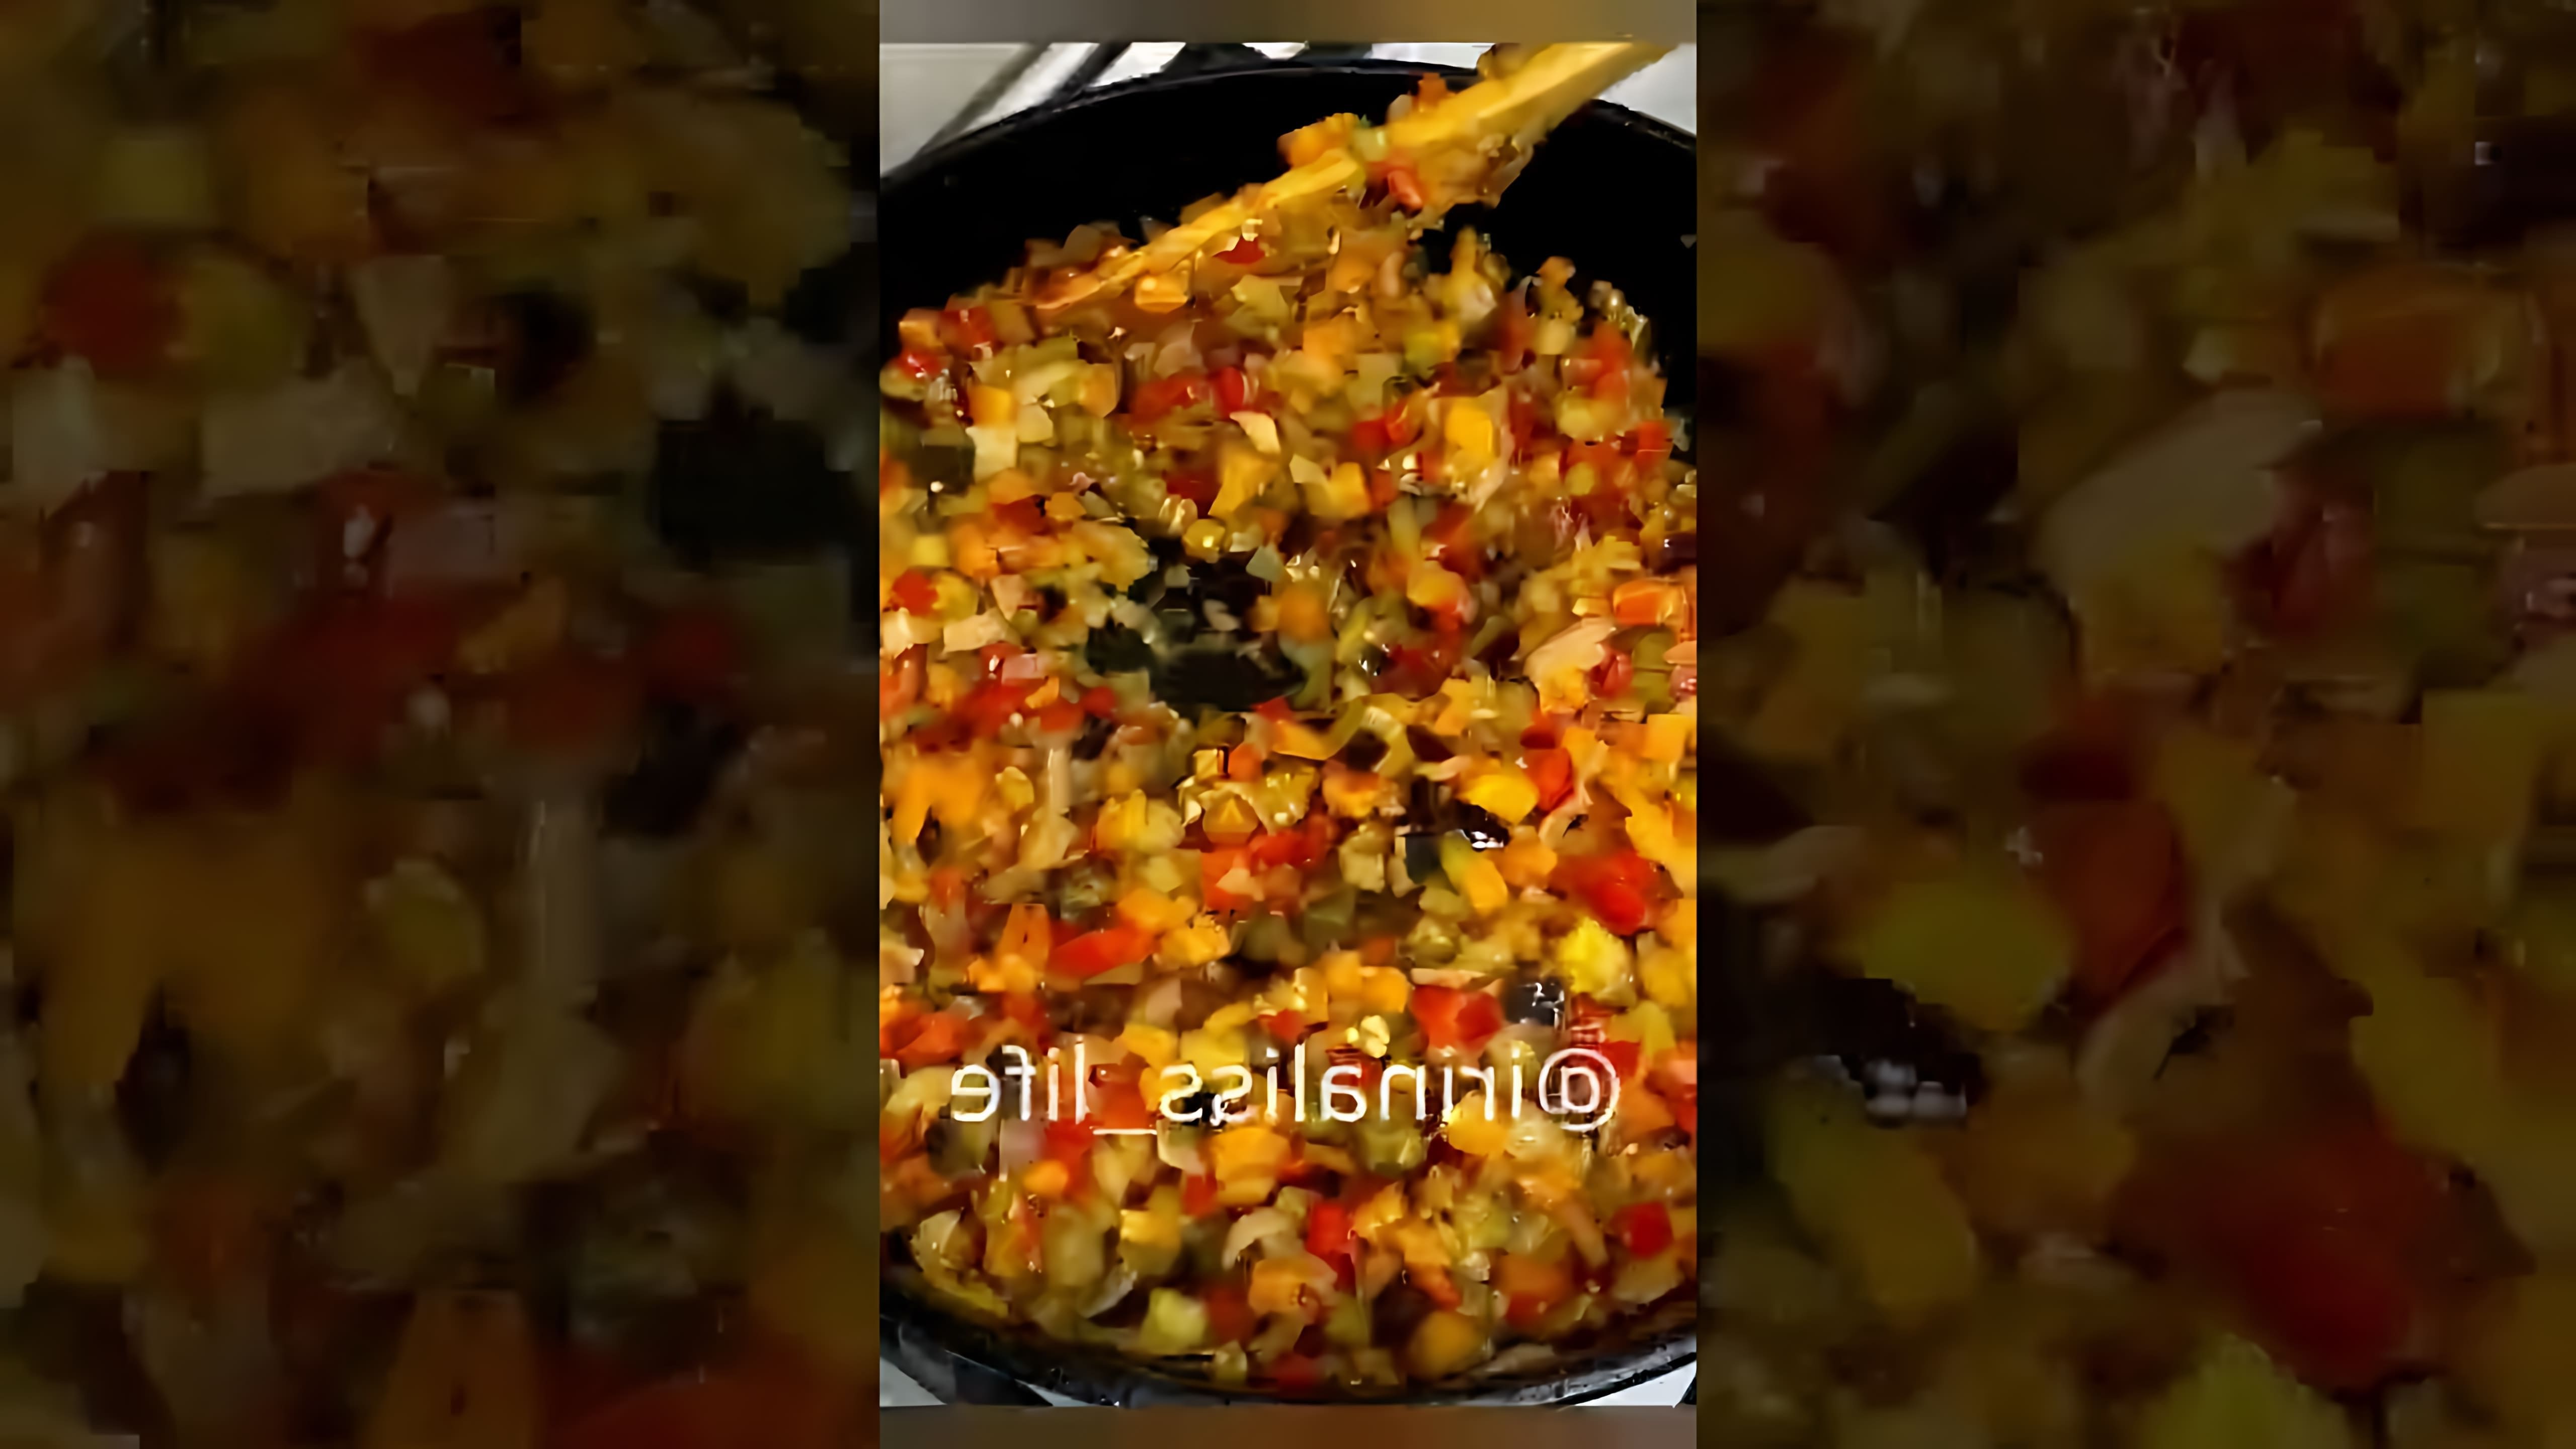 В этом видеоролике, который называется "Баклажанная икра из моего детства / eggplant caviar #Shorts #Irinaliss", автор делится своим рецептом приготовления баклажанной икры